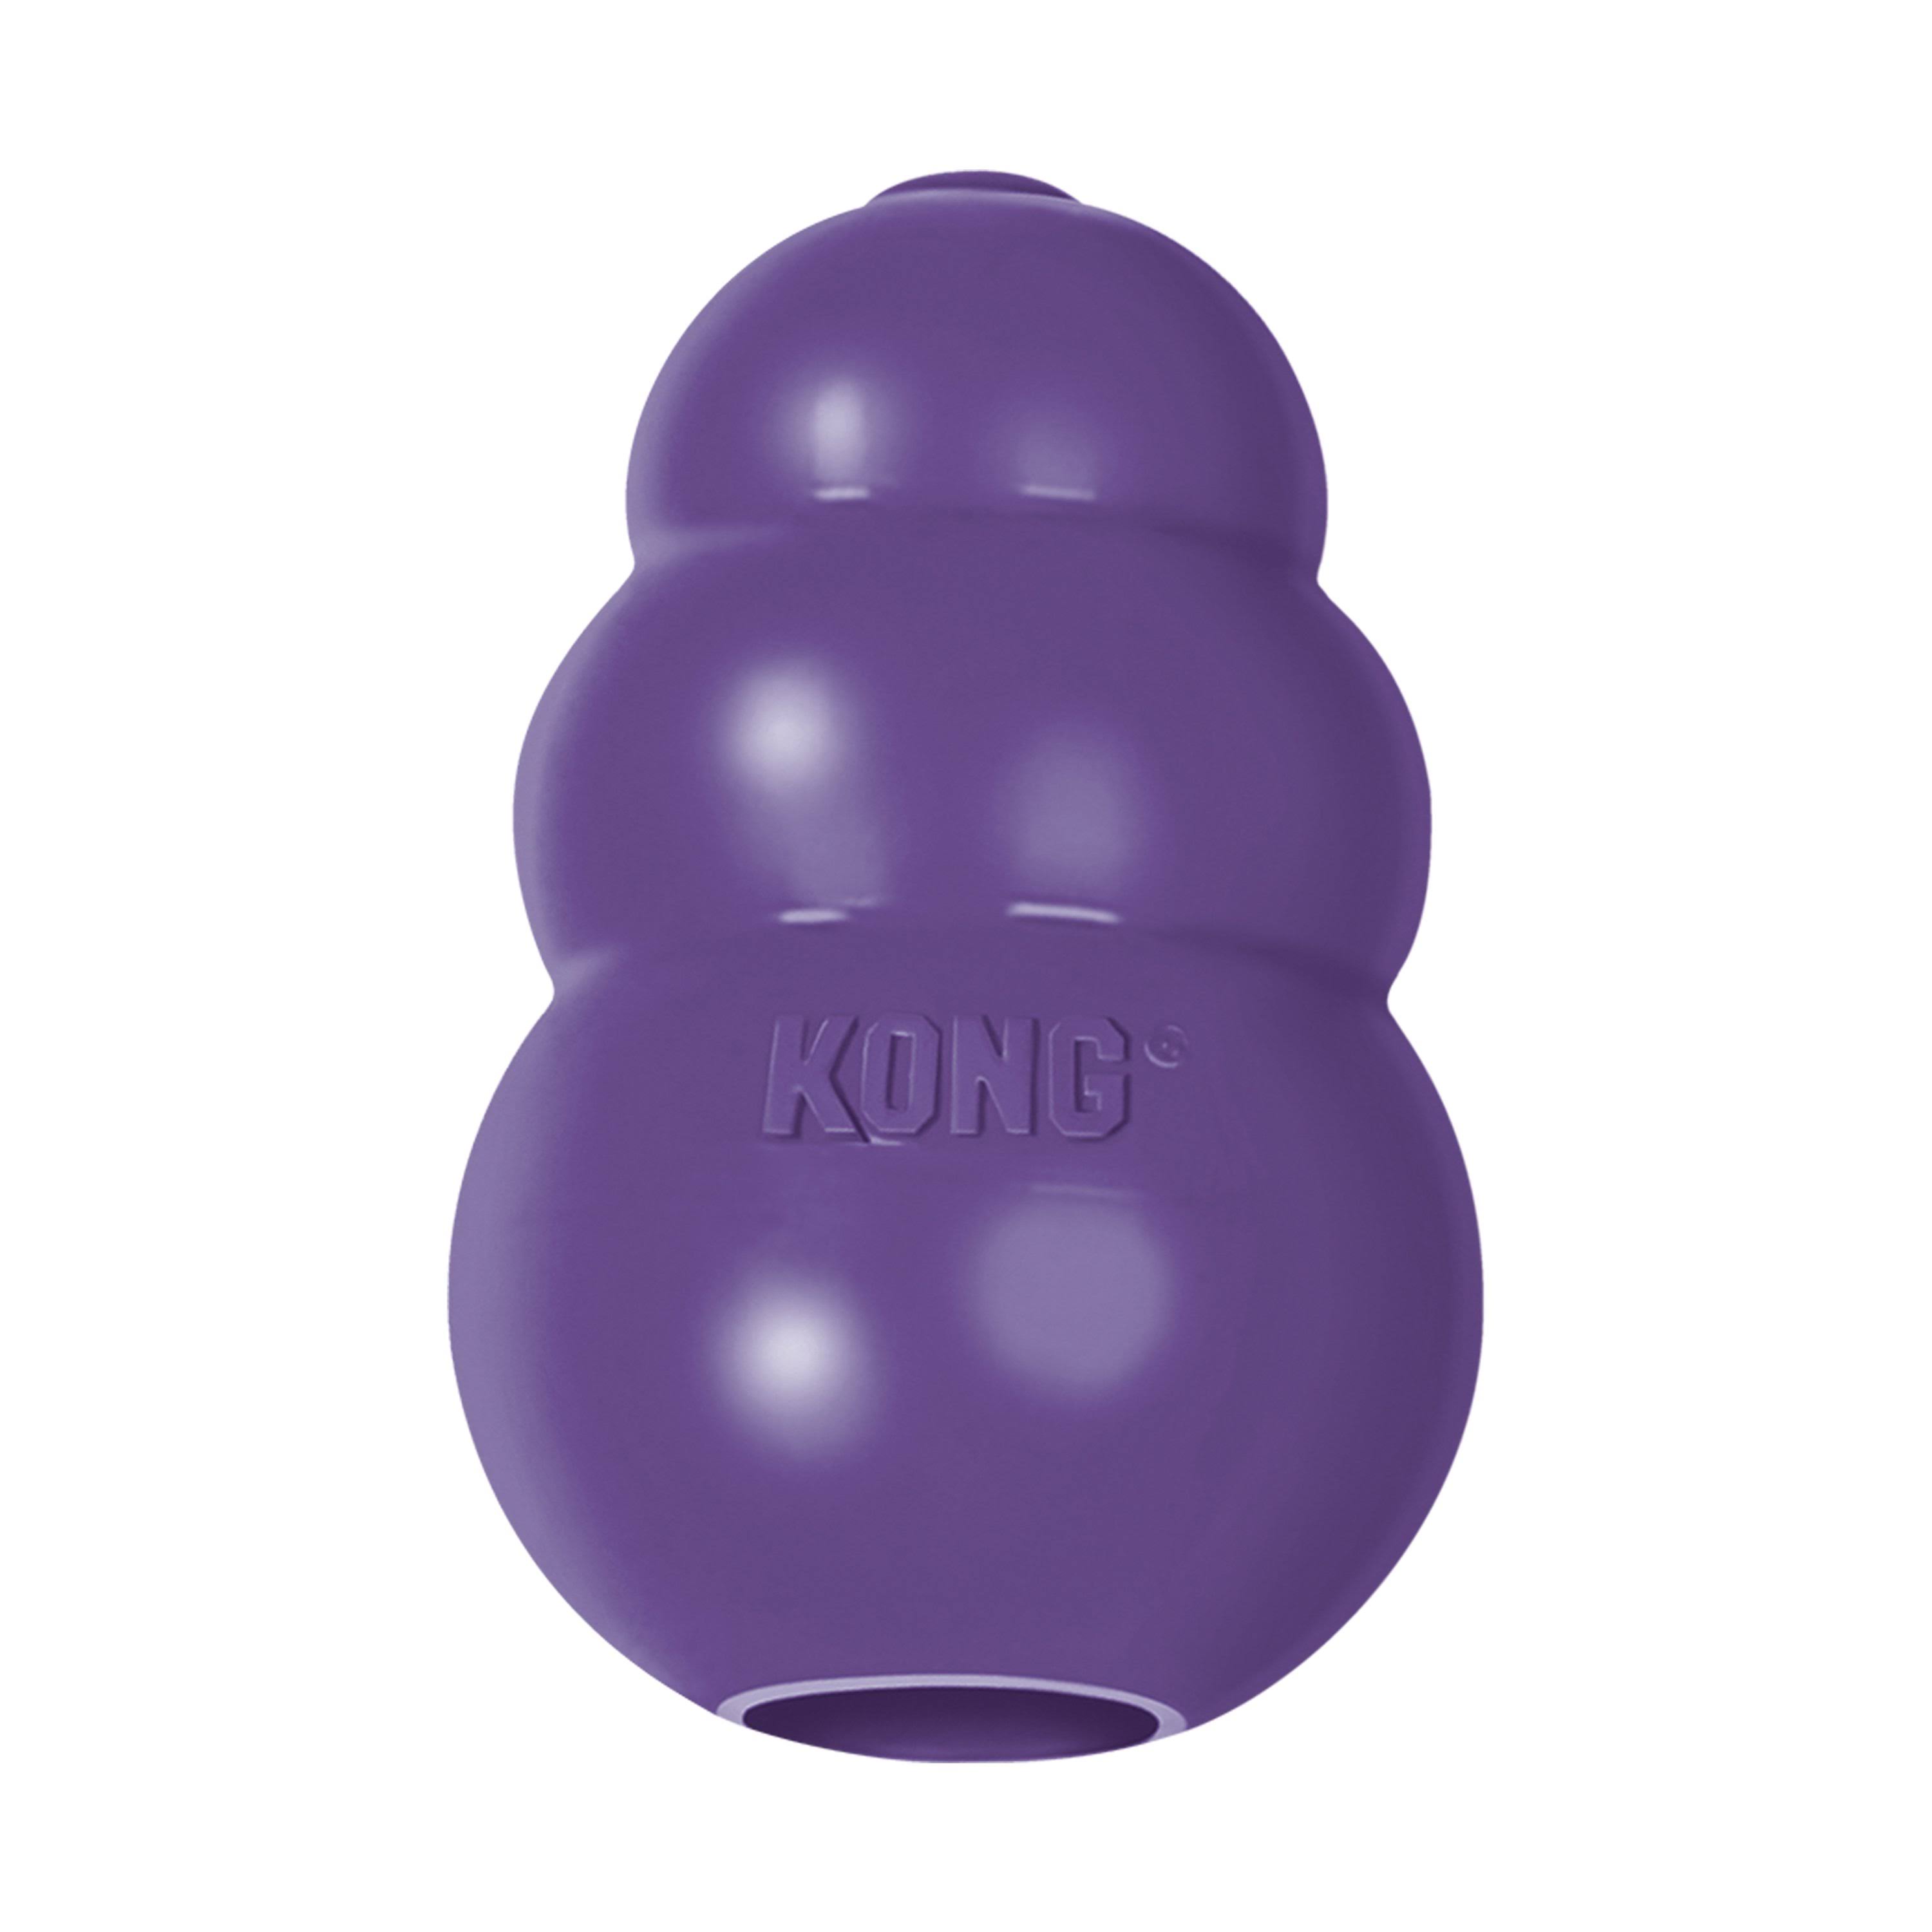 Kong Senior Dog Toy - Large, Purple